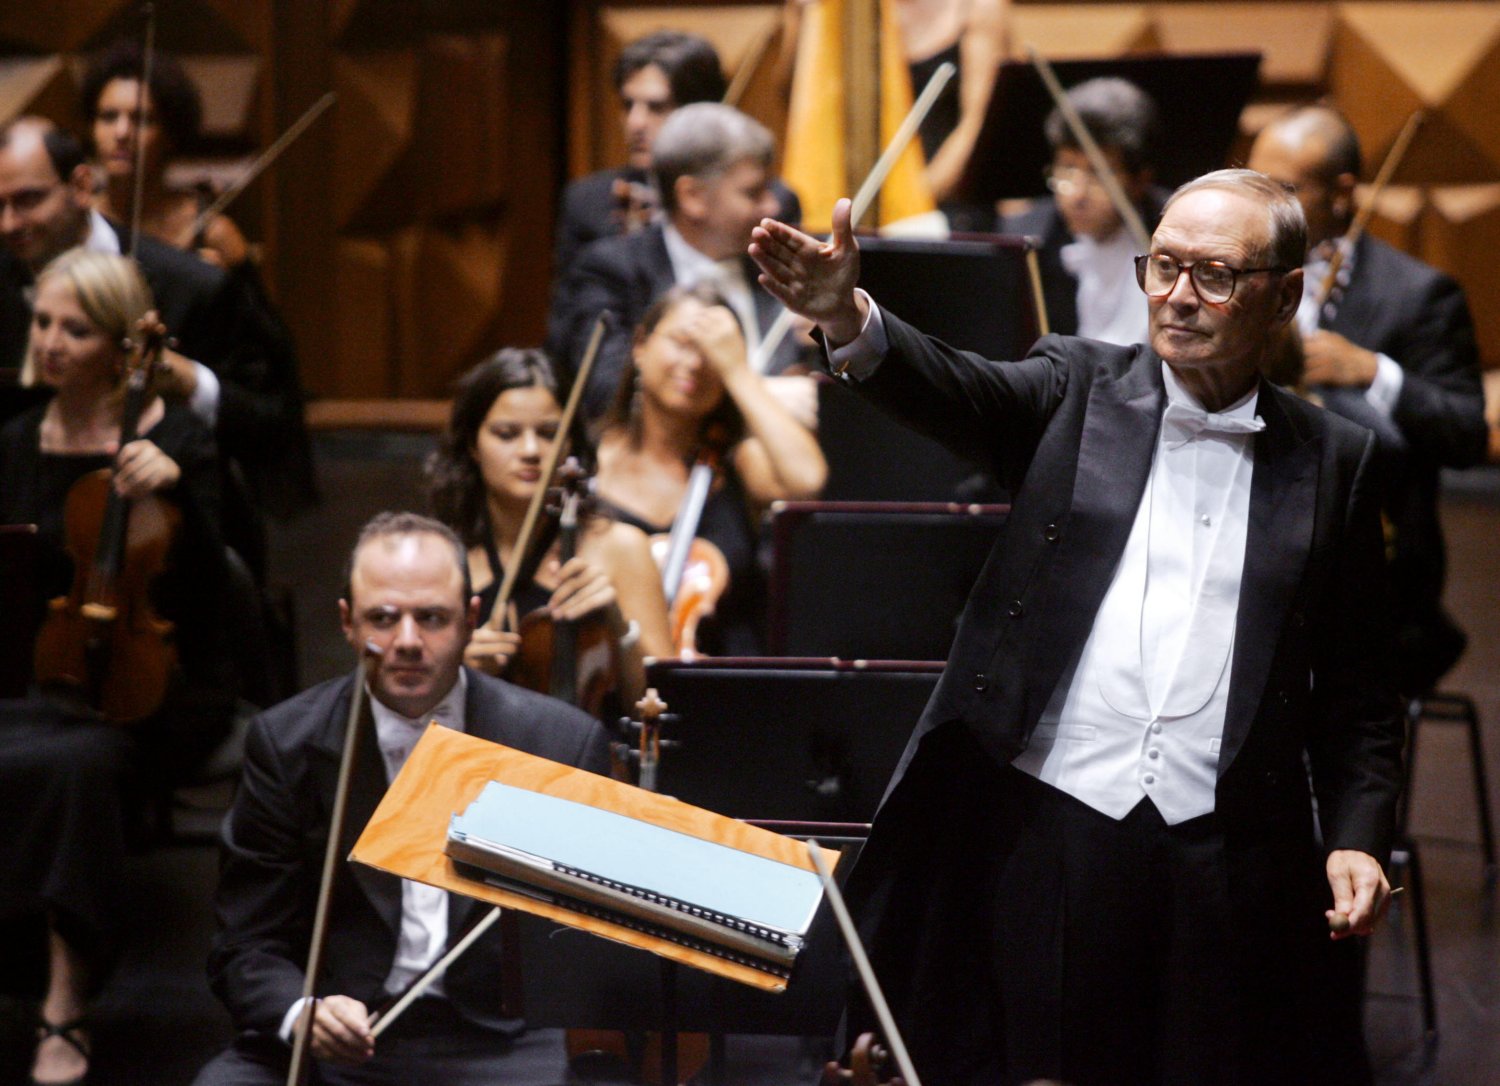 Addio al Maestro Ennio Morricone, compose musica per oltre 500 film